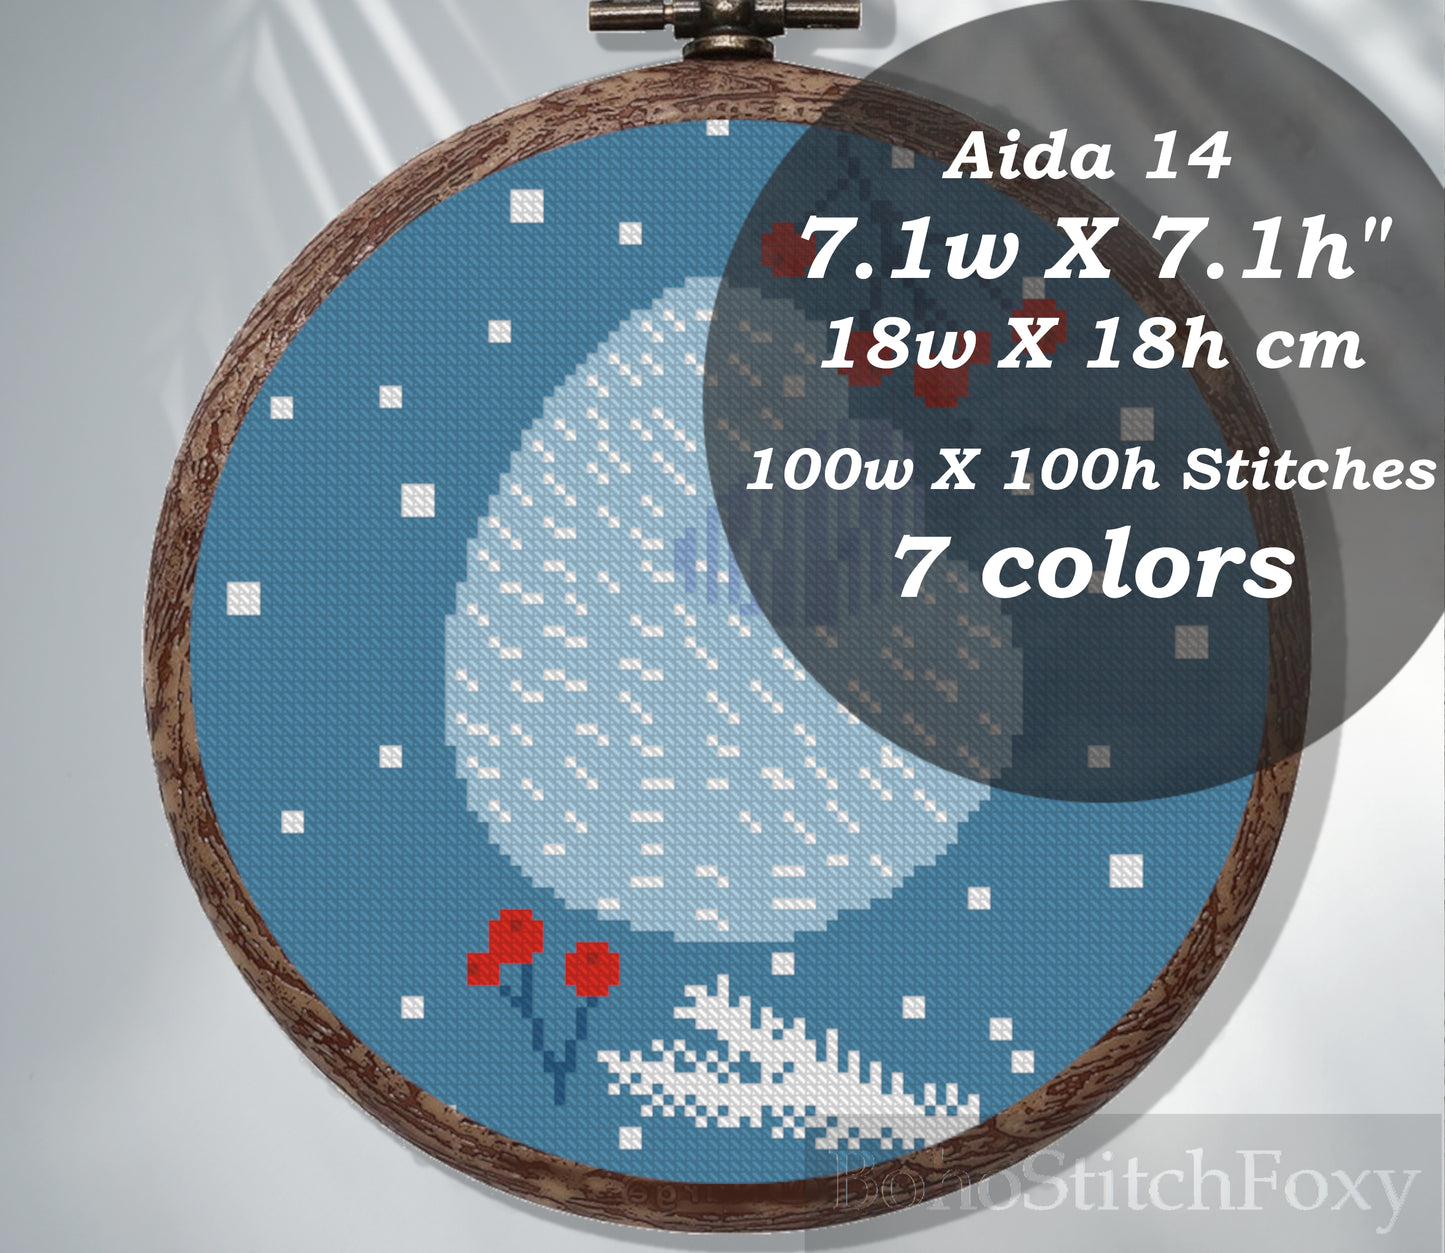 Abstract bono winter cross stitch pattern